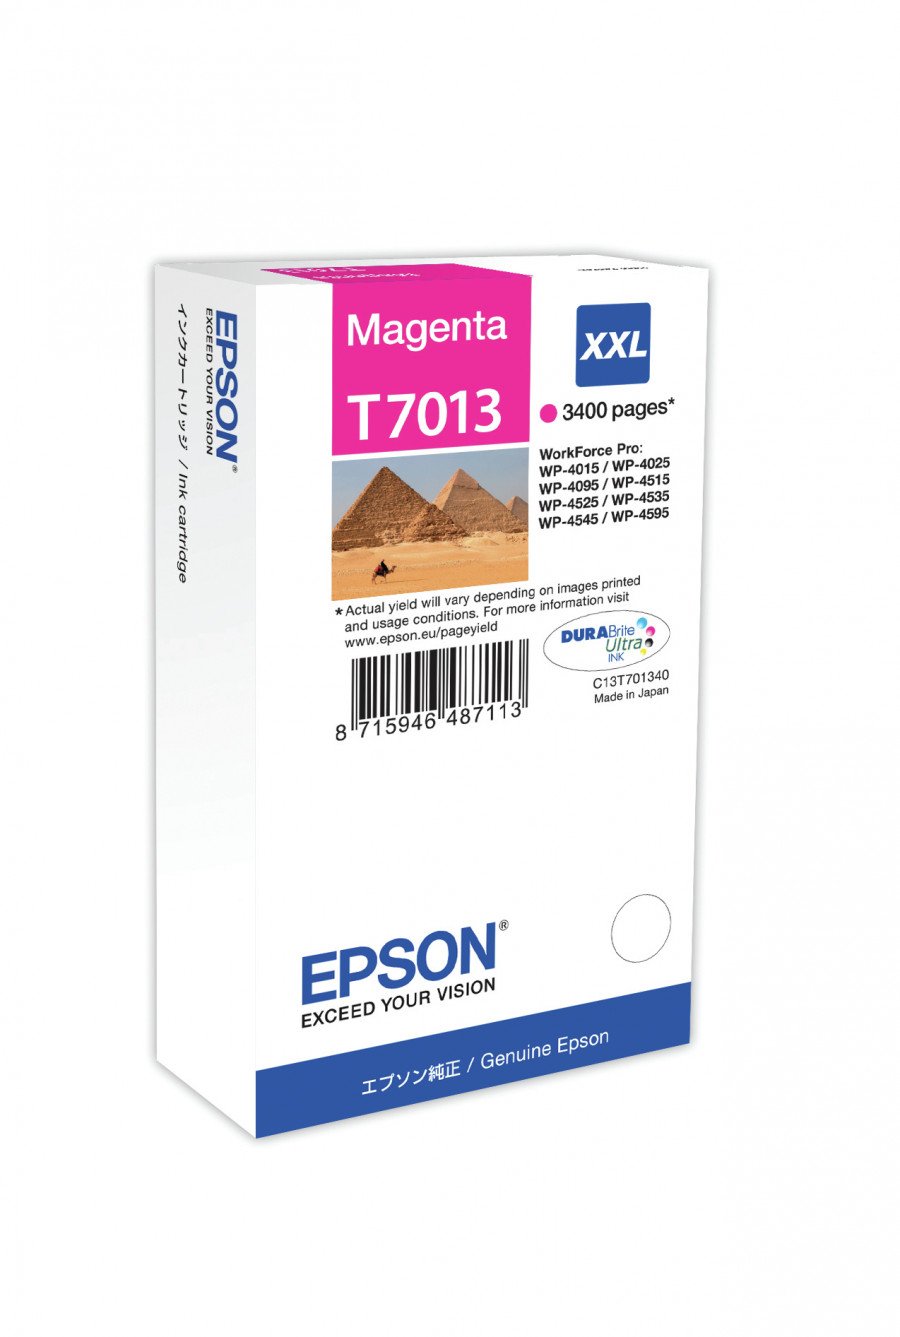 Image of Epson cartuccia t7013 piramidi elevata xxl magenta PIRAMIDI Materiale di consumo Informatica